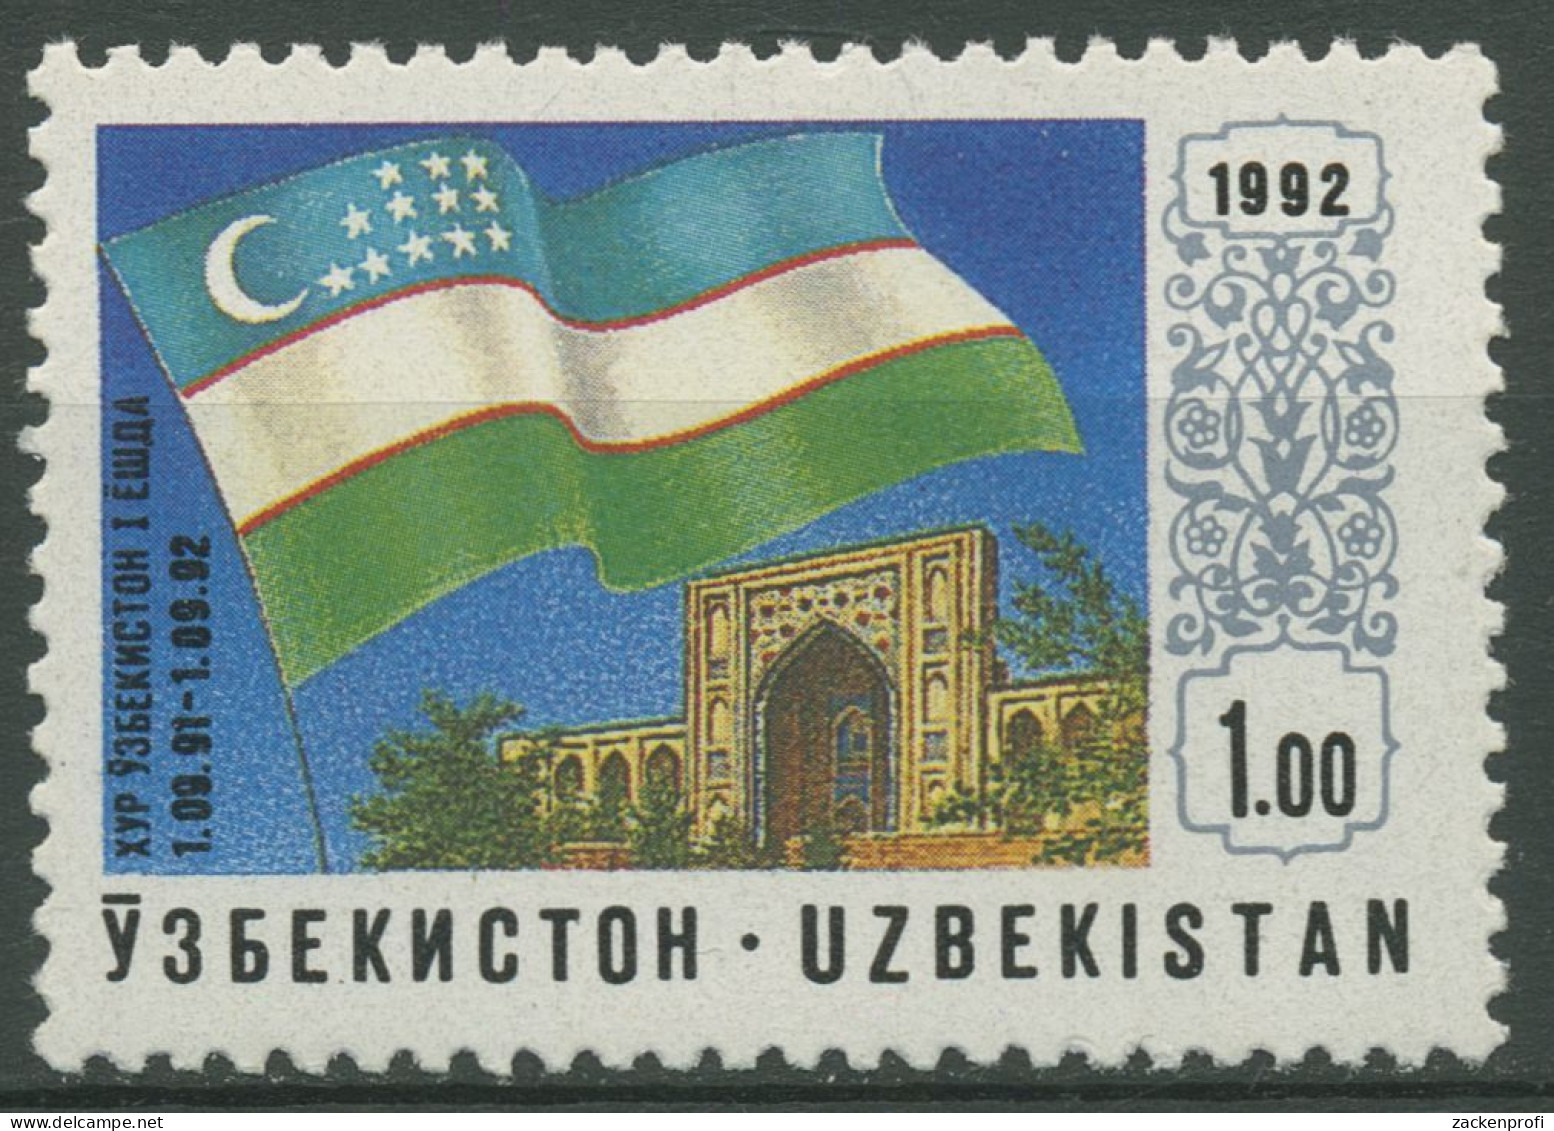 Usbekistan 1992 Unabhängigkeit Flagge 3 Postfrisch - Uzbekistán